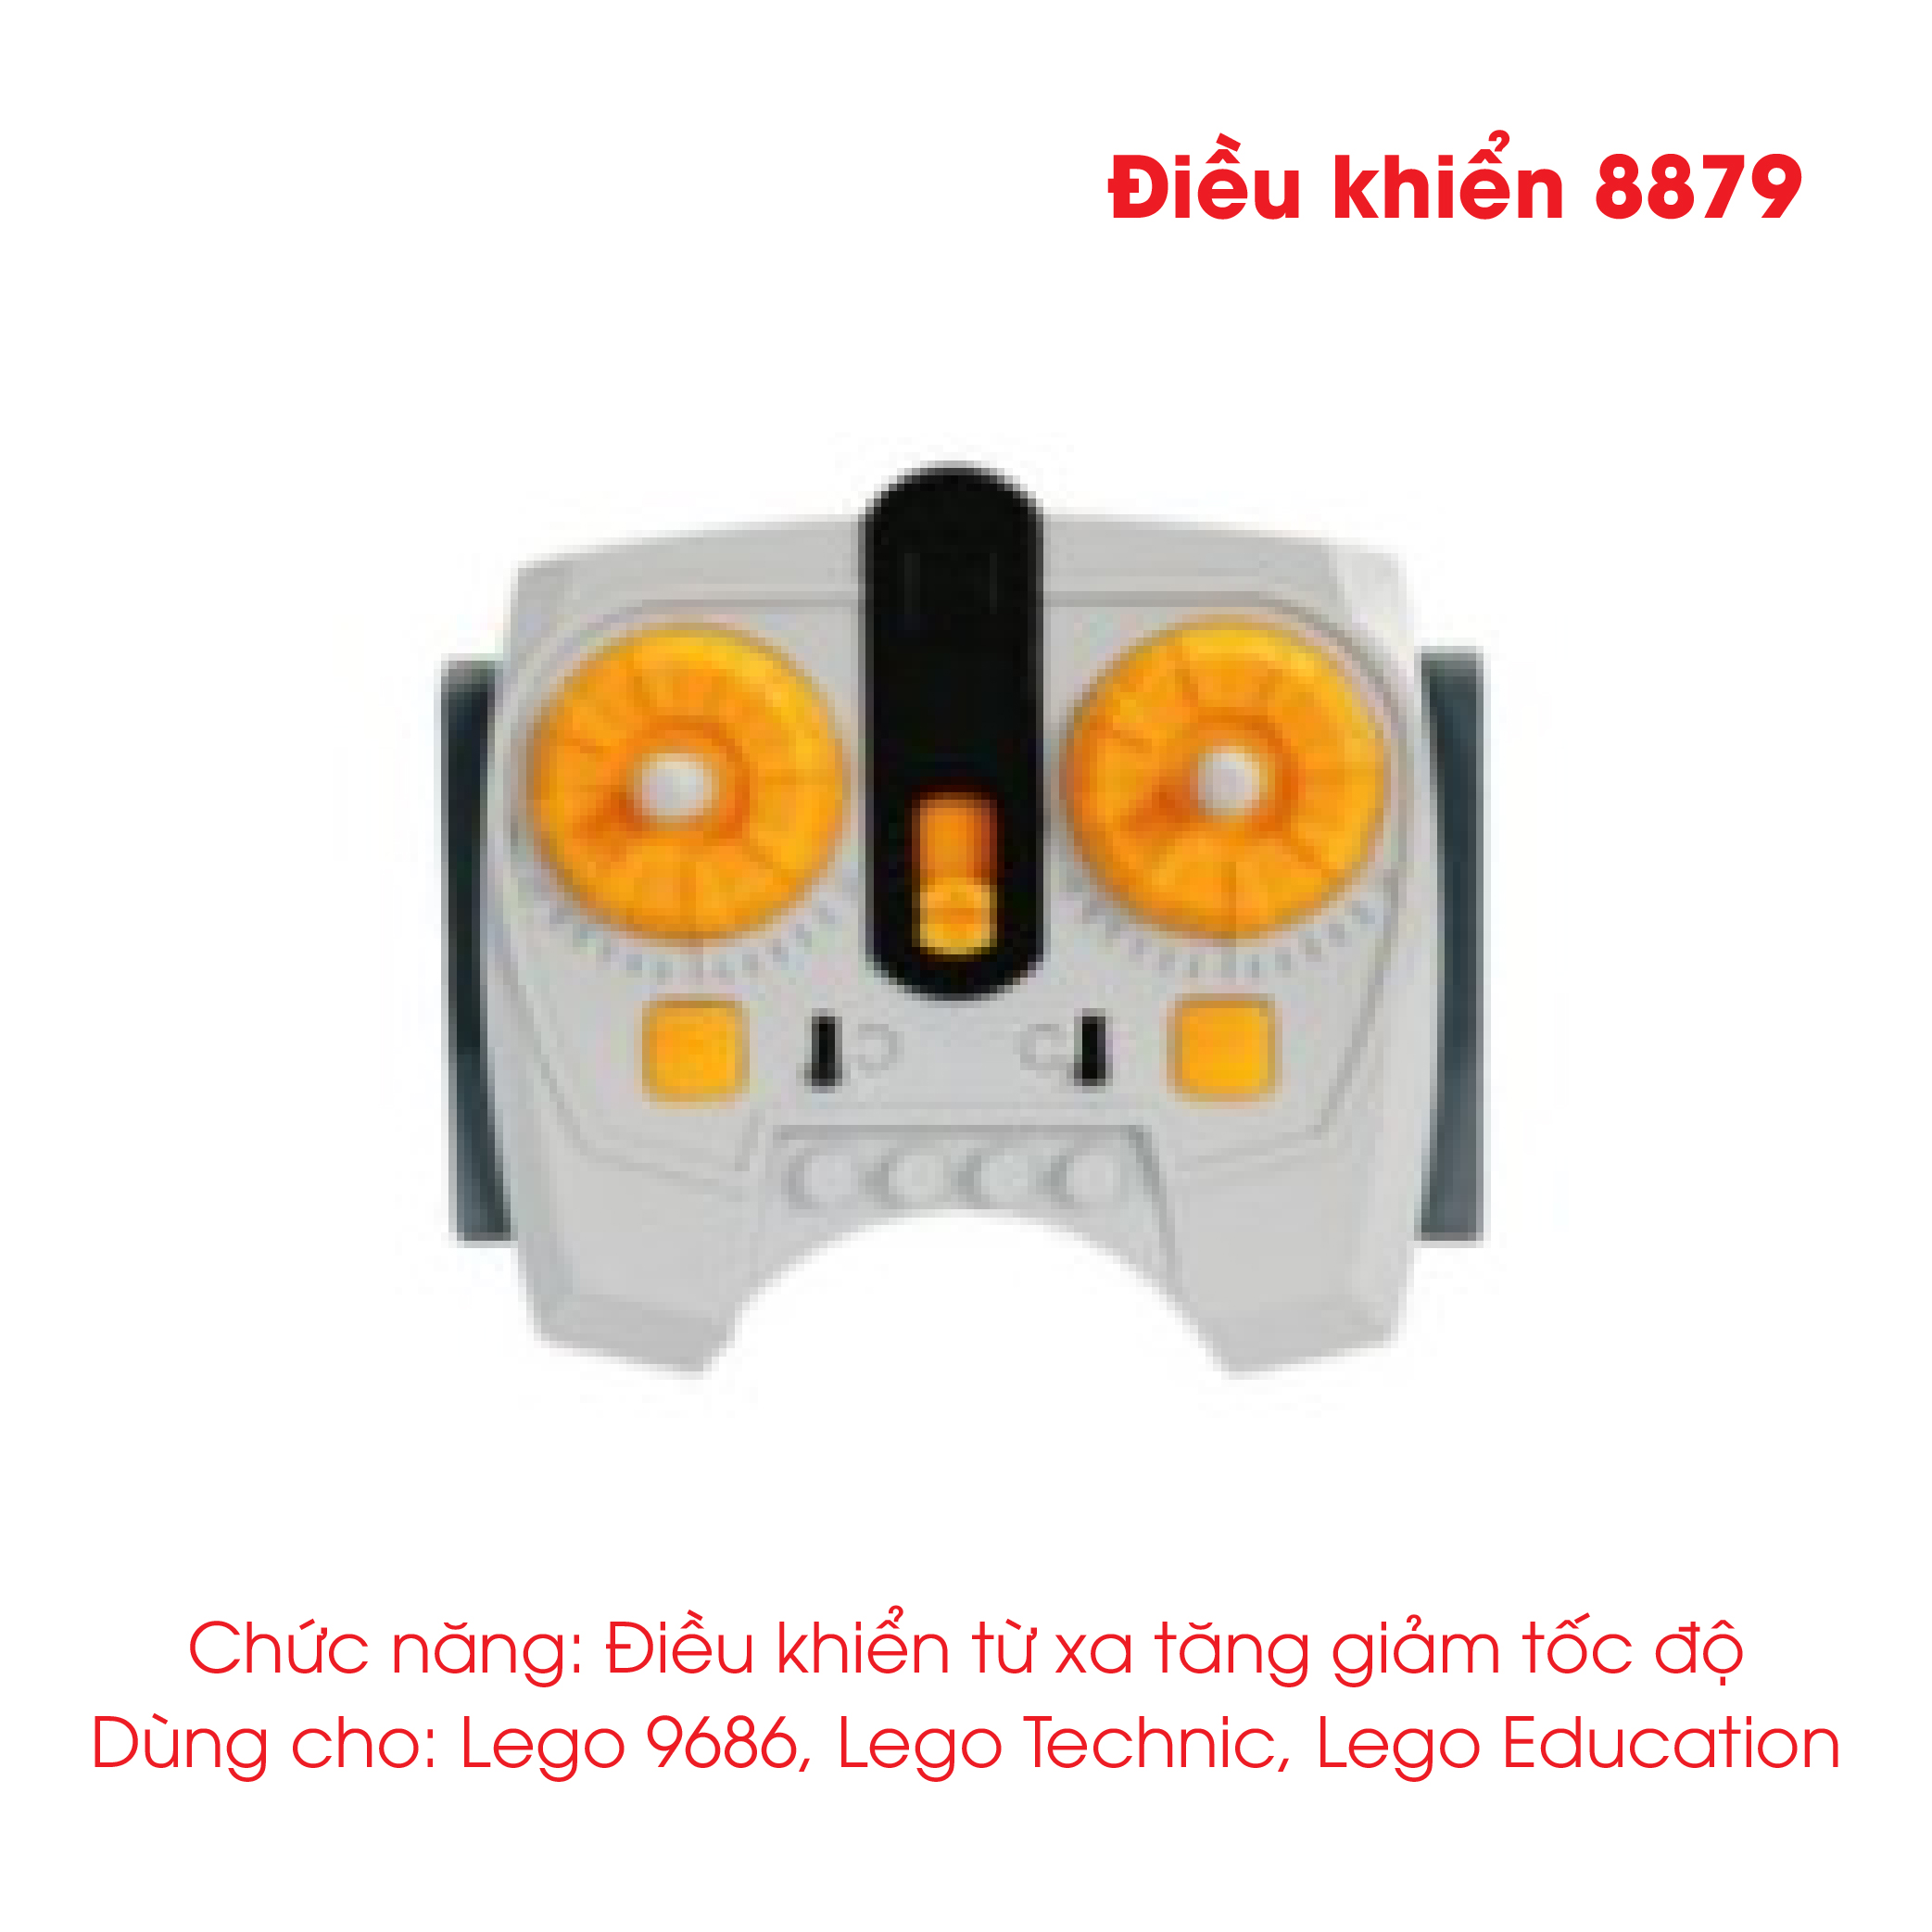 Động Cơ Lego Điều Khiển Từ Xa Dùng Cho Lego 9686 Lego Technic Lego Education Tín Hiệu Tối Đa 10M